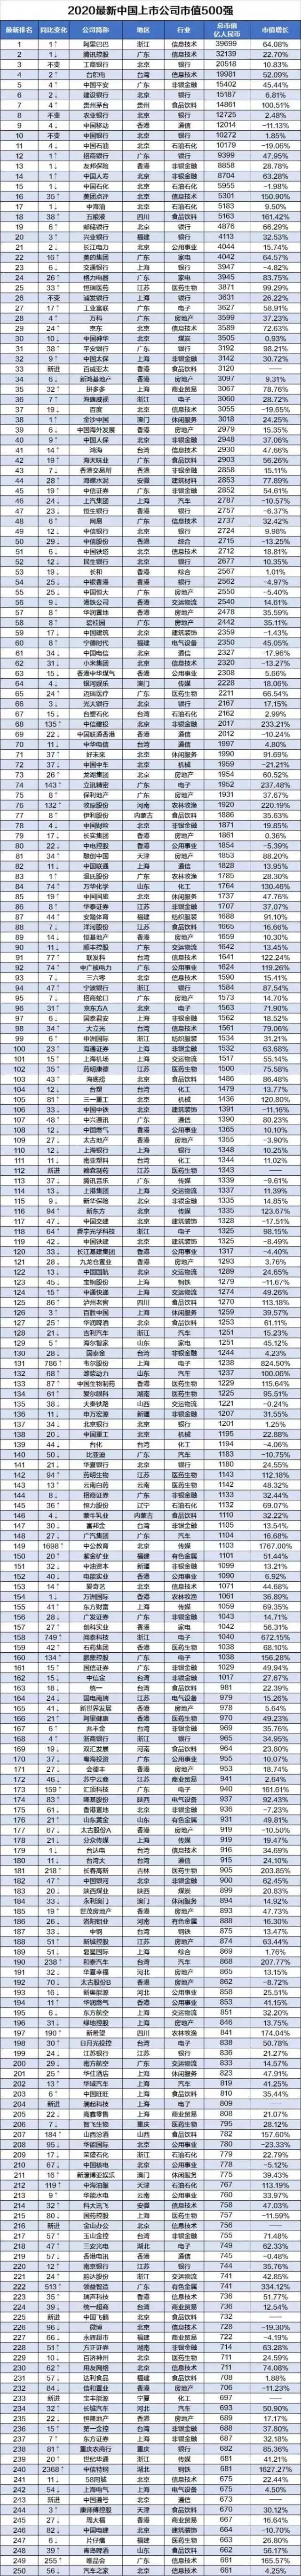 2020最新中国上市公司市值500强排行榜出炉(附榜单)